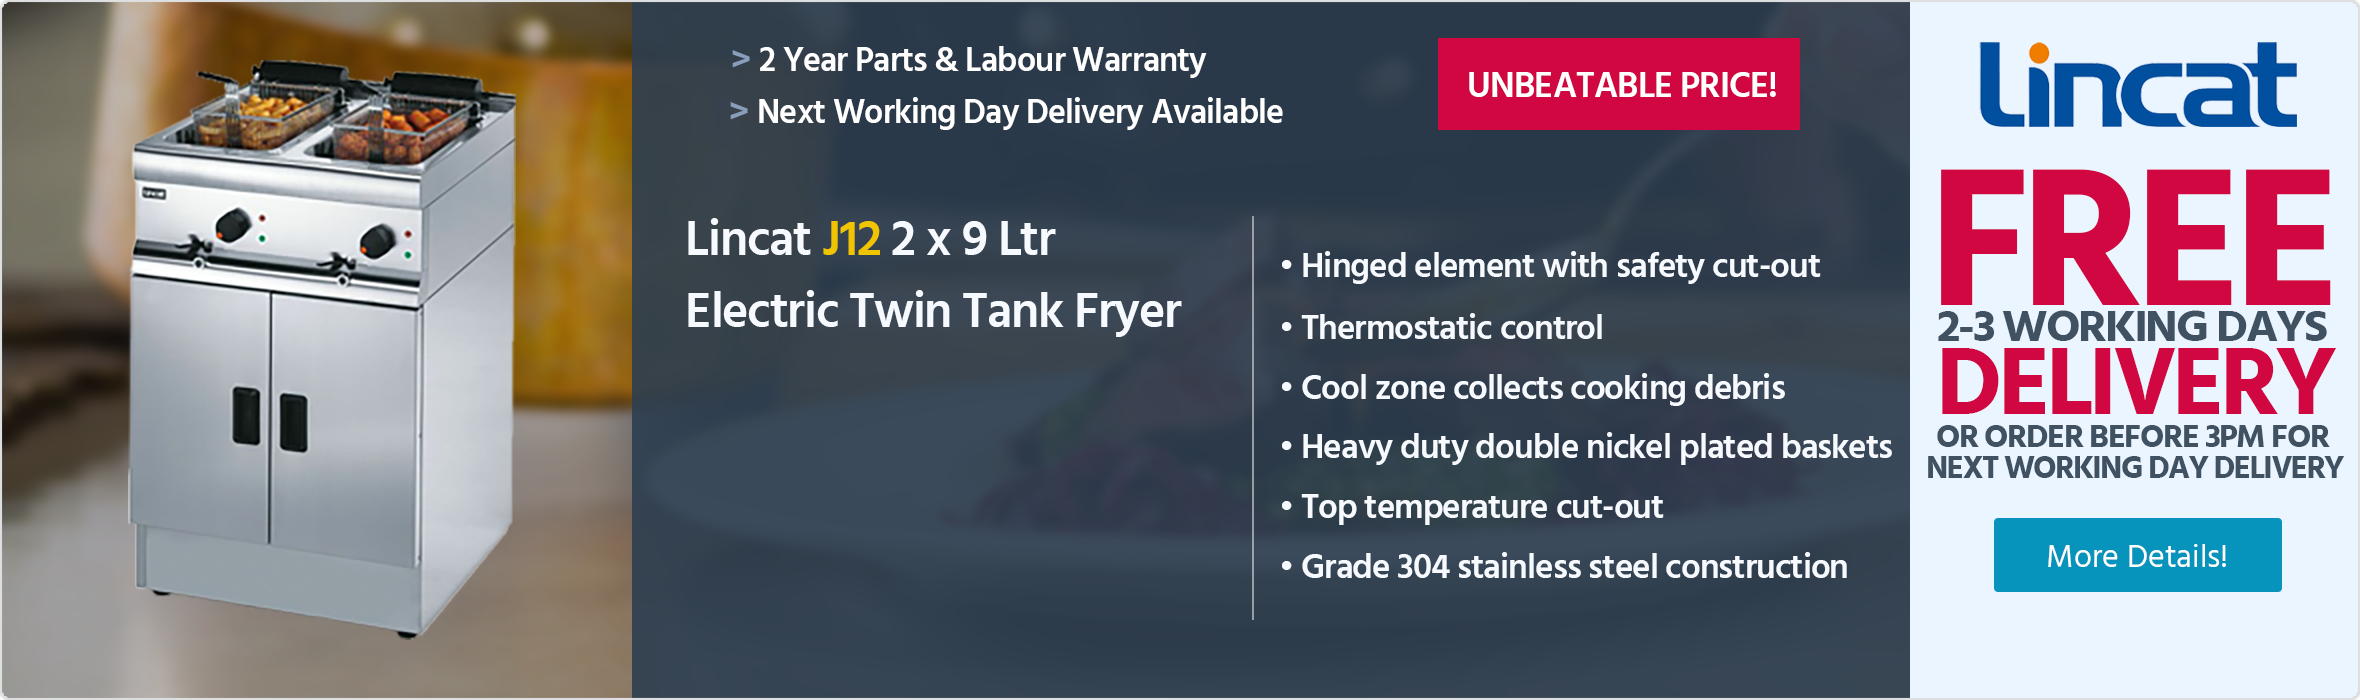 Lincat Silverlink 600 J12 2 x 9 Ltr Electric Free-Standing Twin Tank Fryer